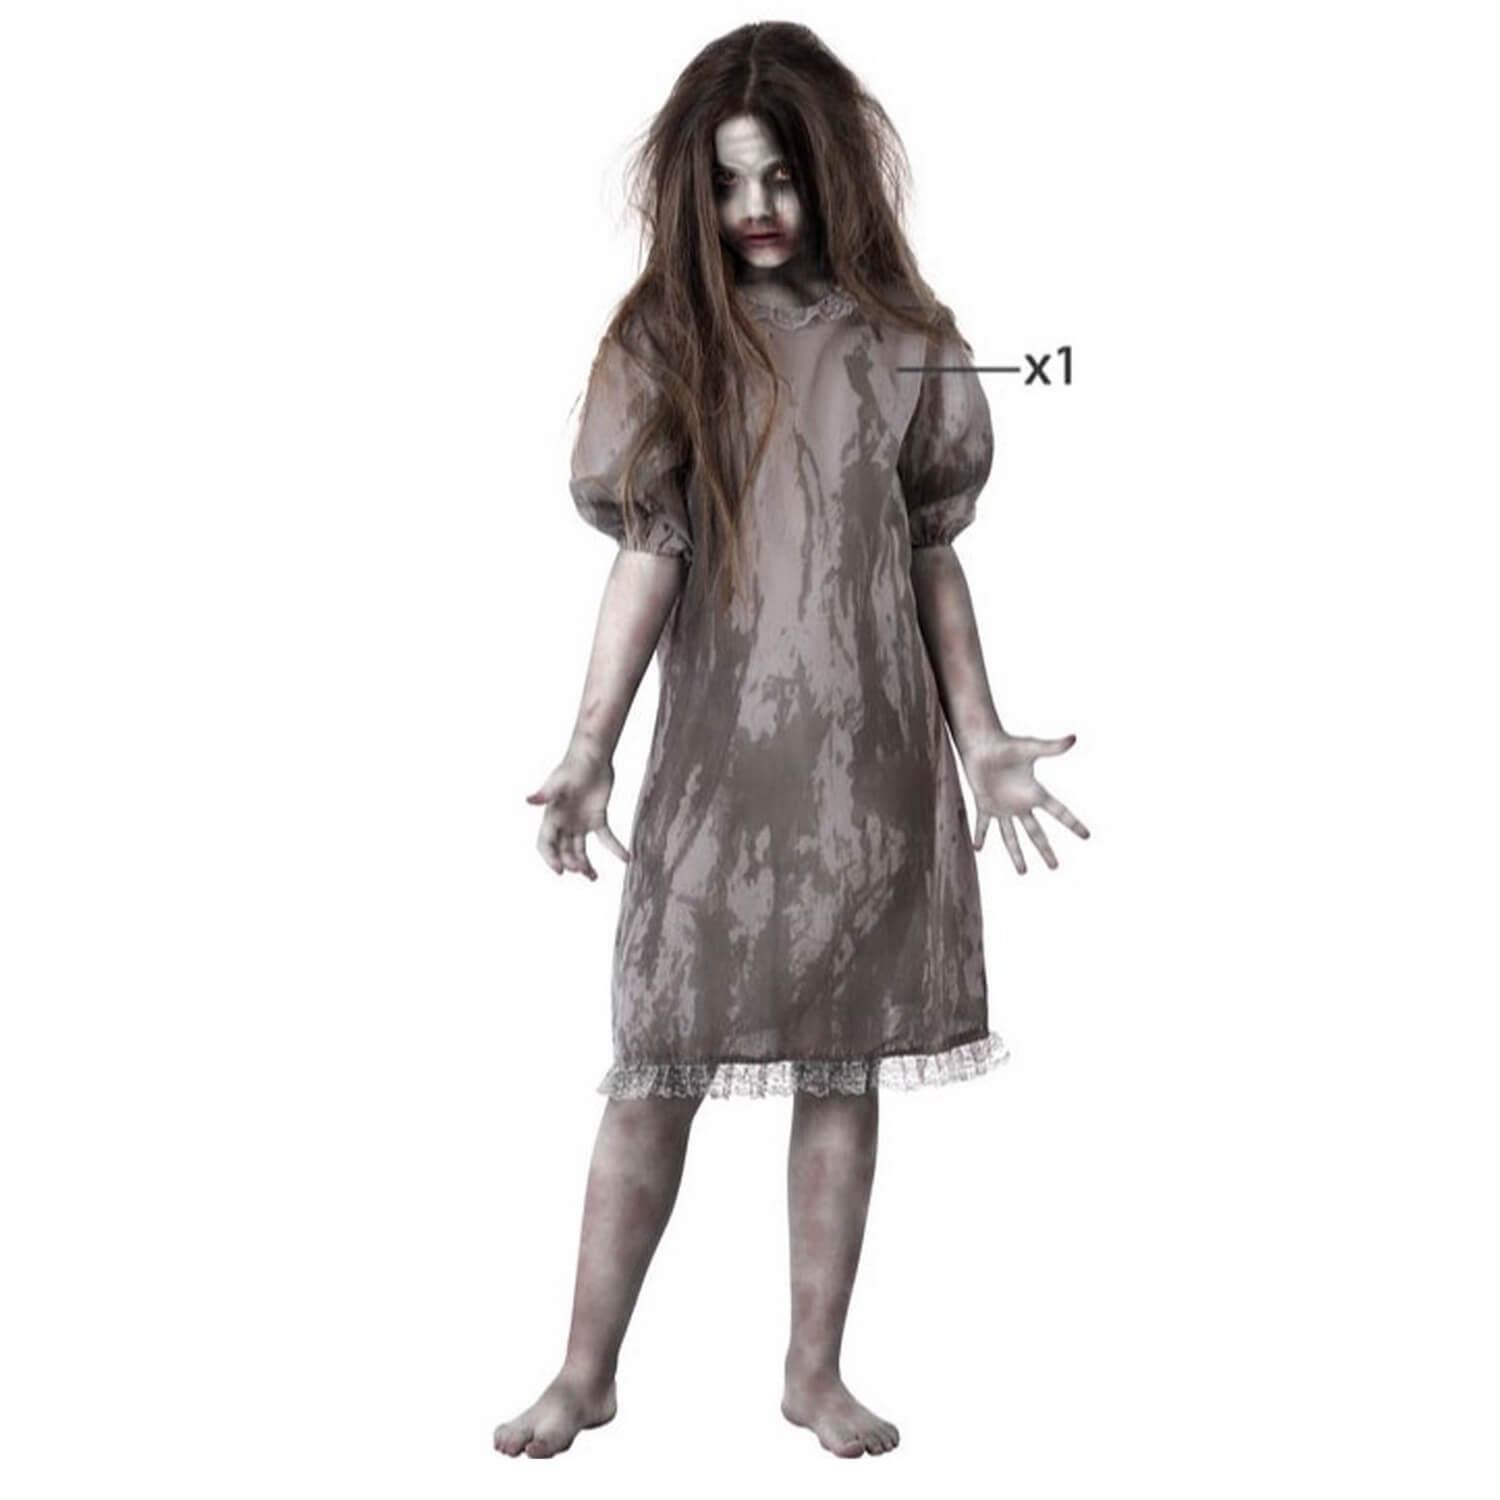 Vente déguisement enfant princesse zombie halloween ensanglanté fille